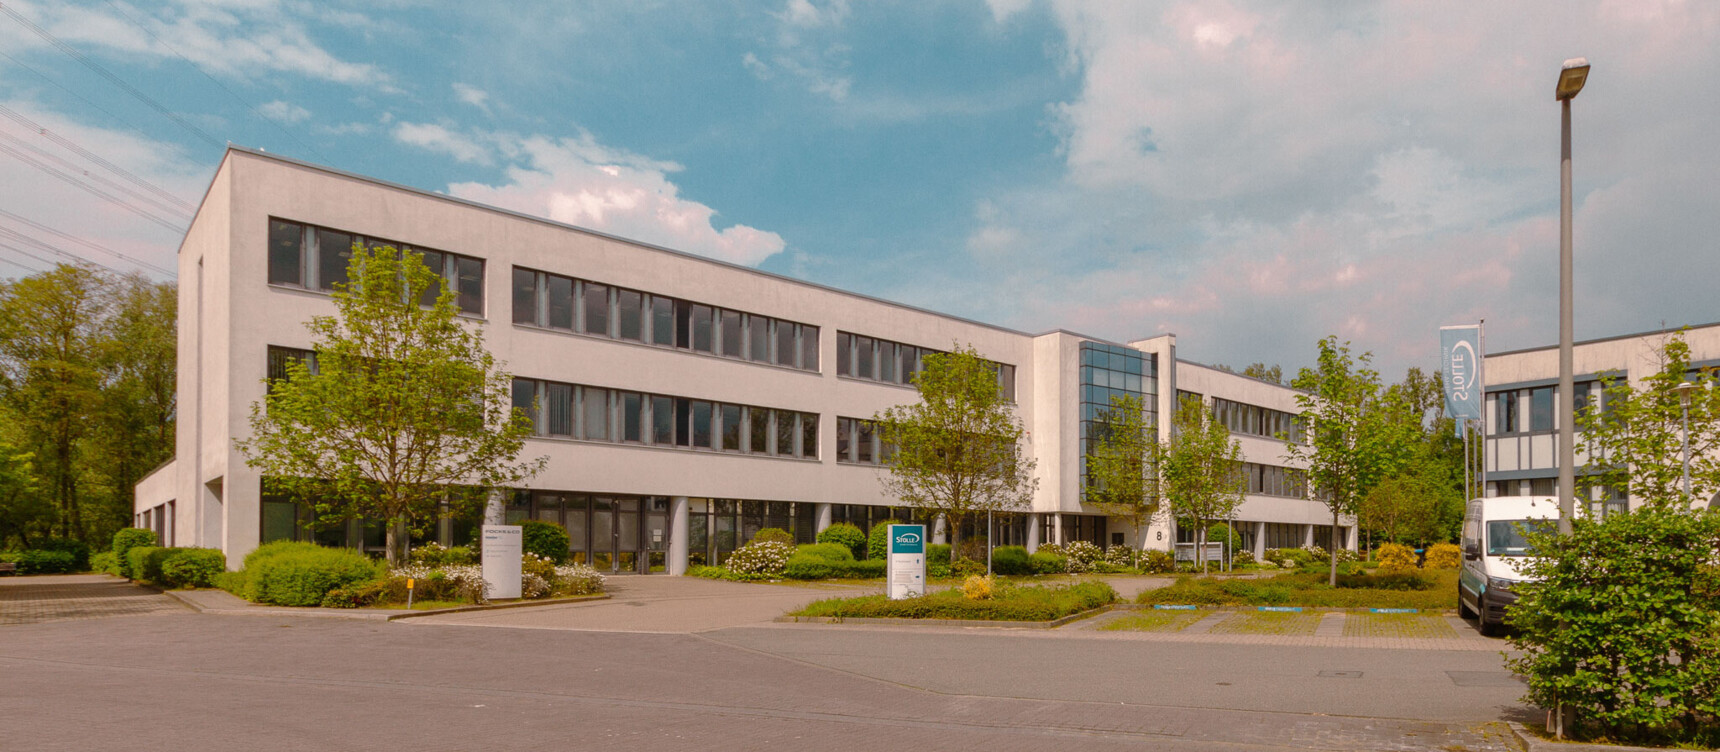 Stolle Zentrum für Reha-Technik im Staddteil Neuland